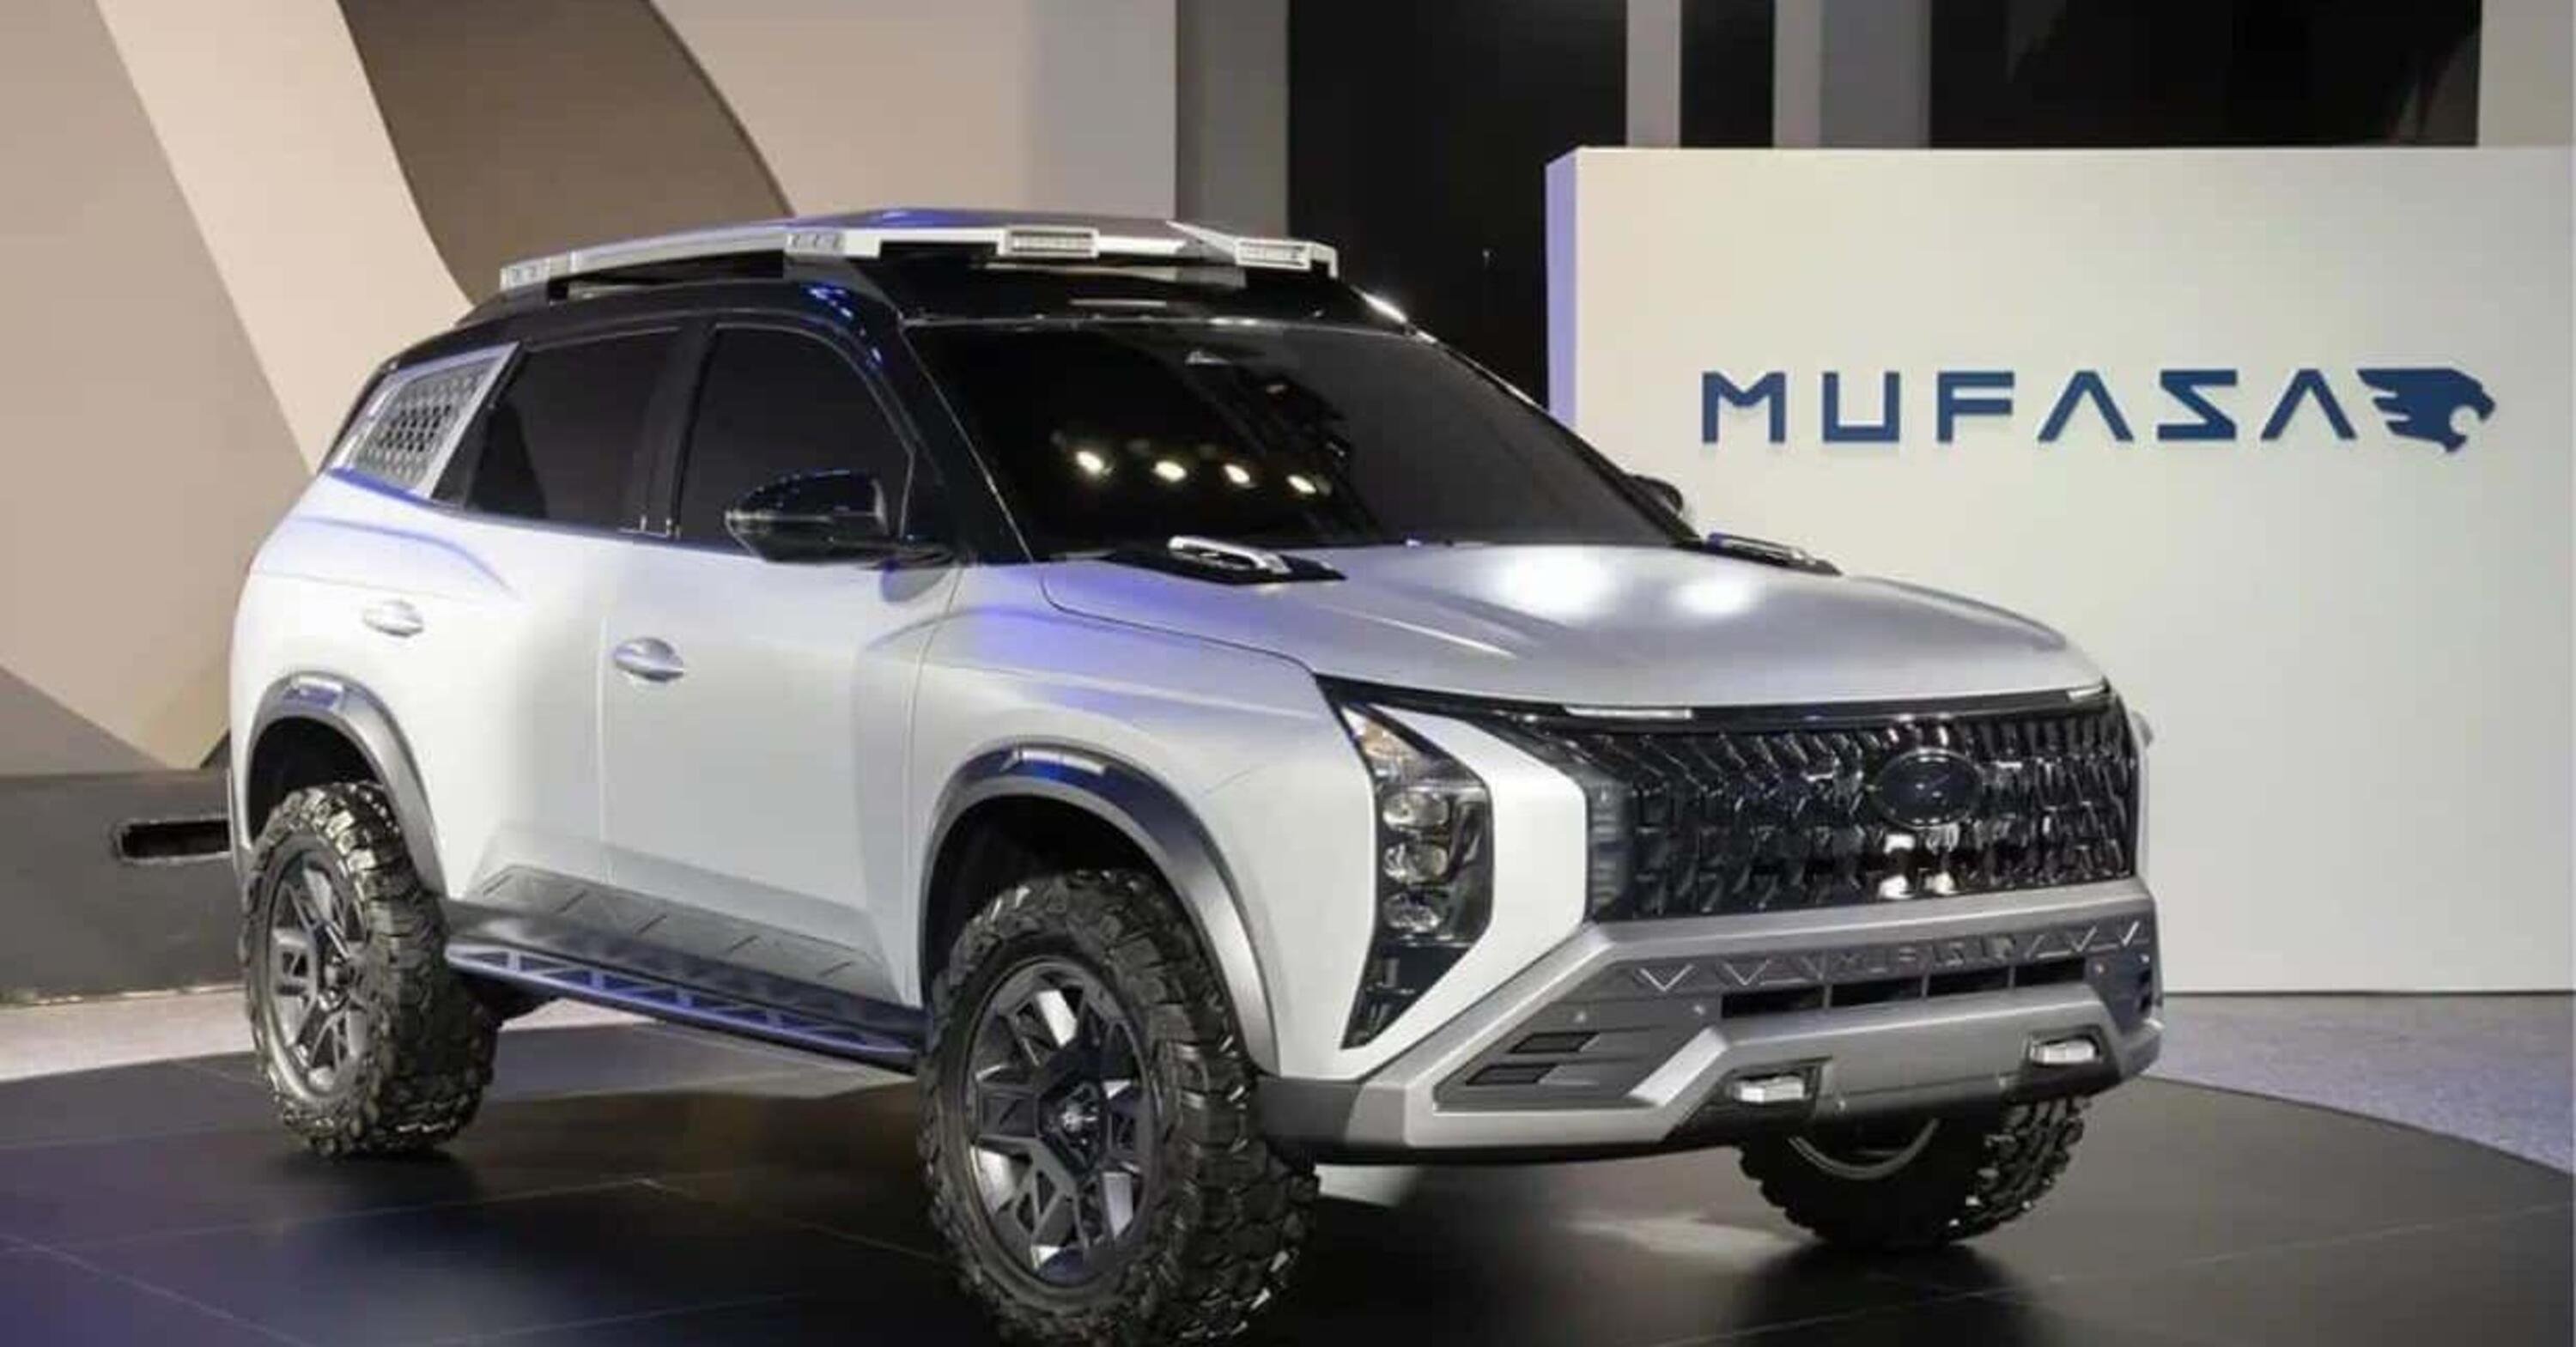 Hyundai Mufasa, debutta la concept offroader cinese